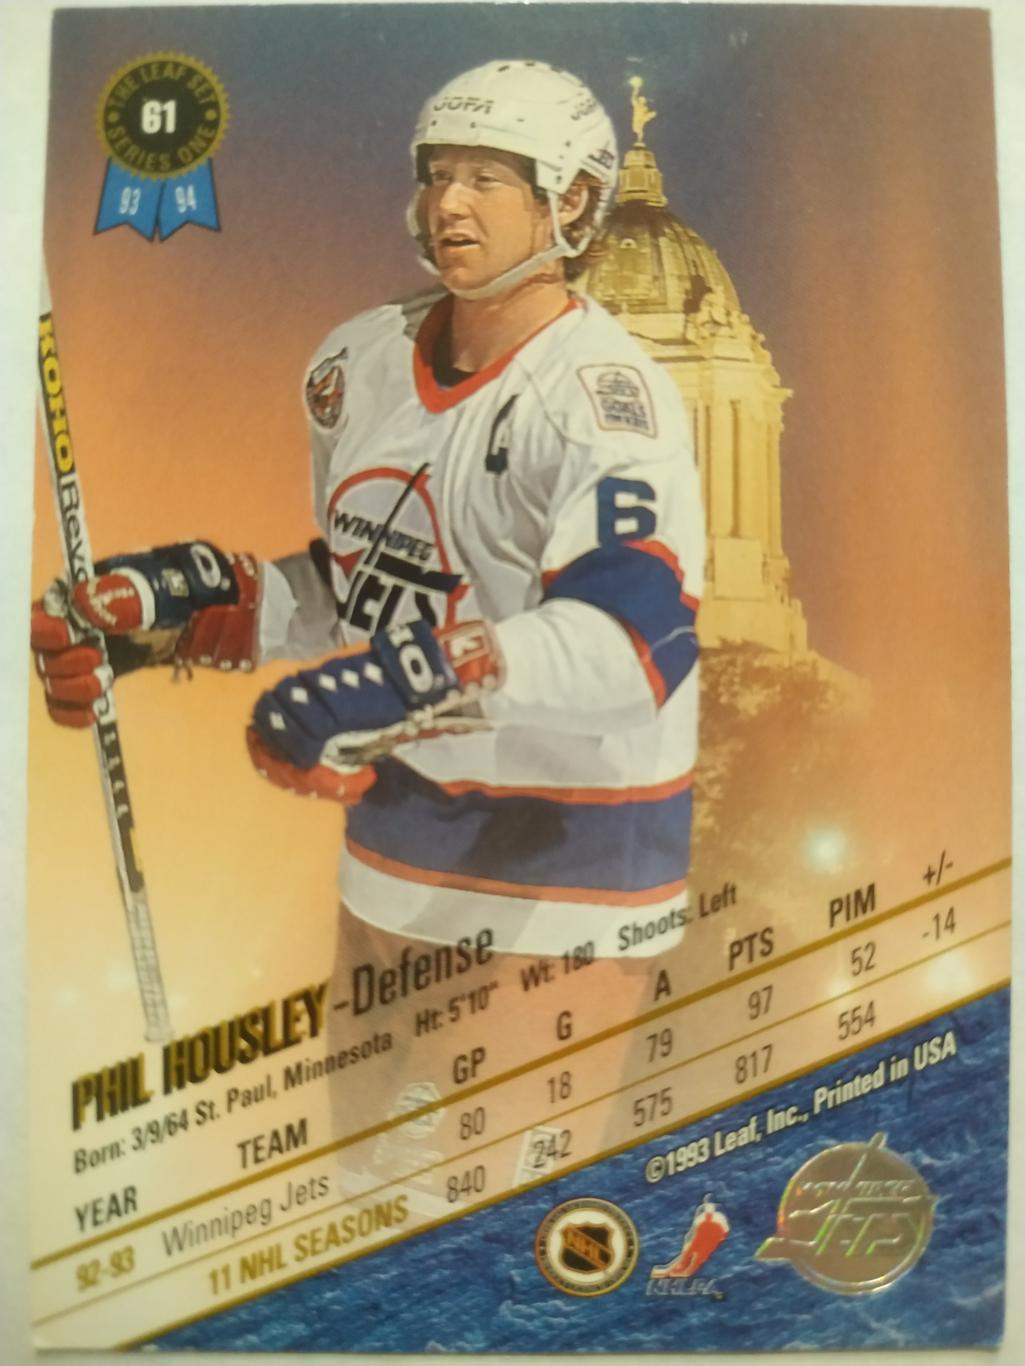 ХОККЕЙ КАРТОЧКА НХЛ LEAF SET SERIES ONE 1993-94 PHIL HOUSLEY WINNIPEG JETS #61 1